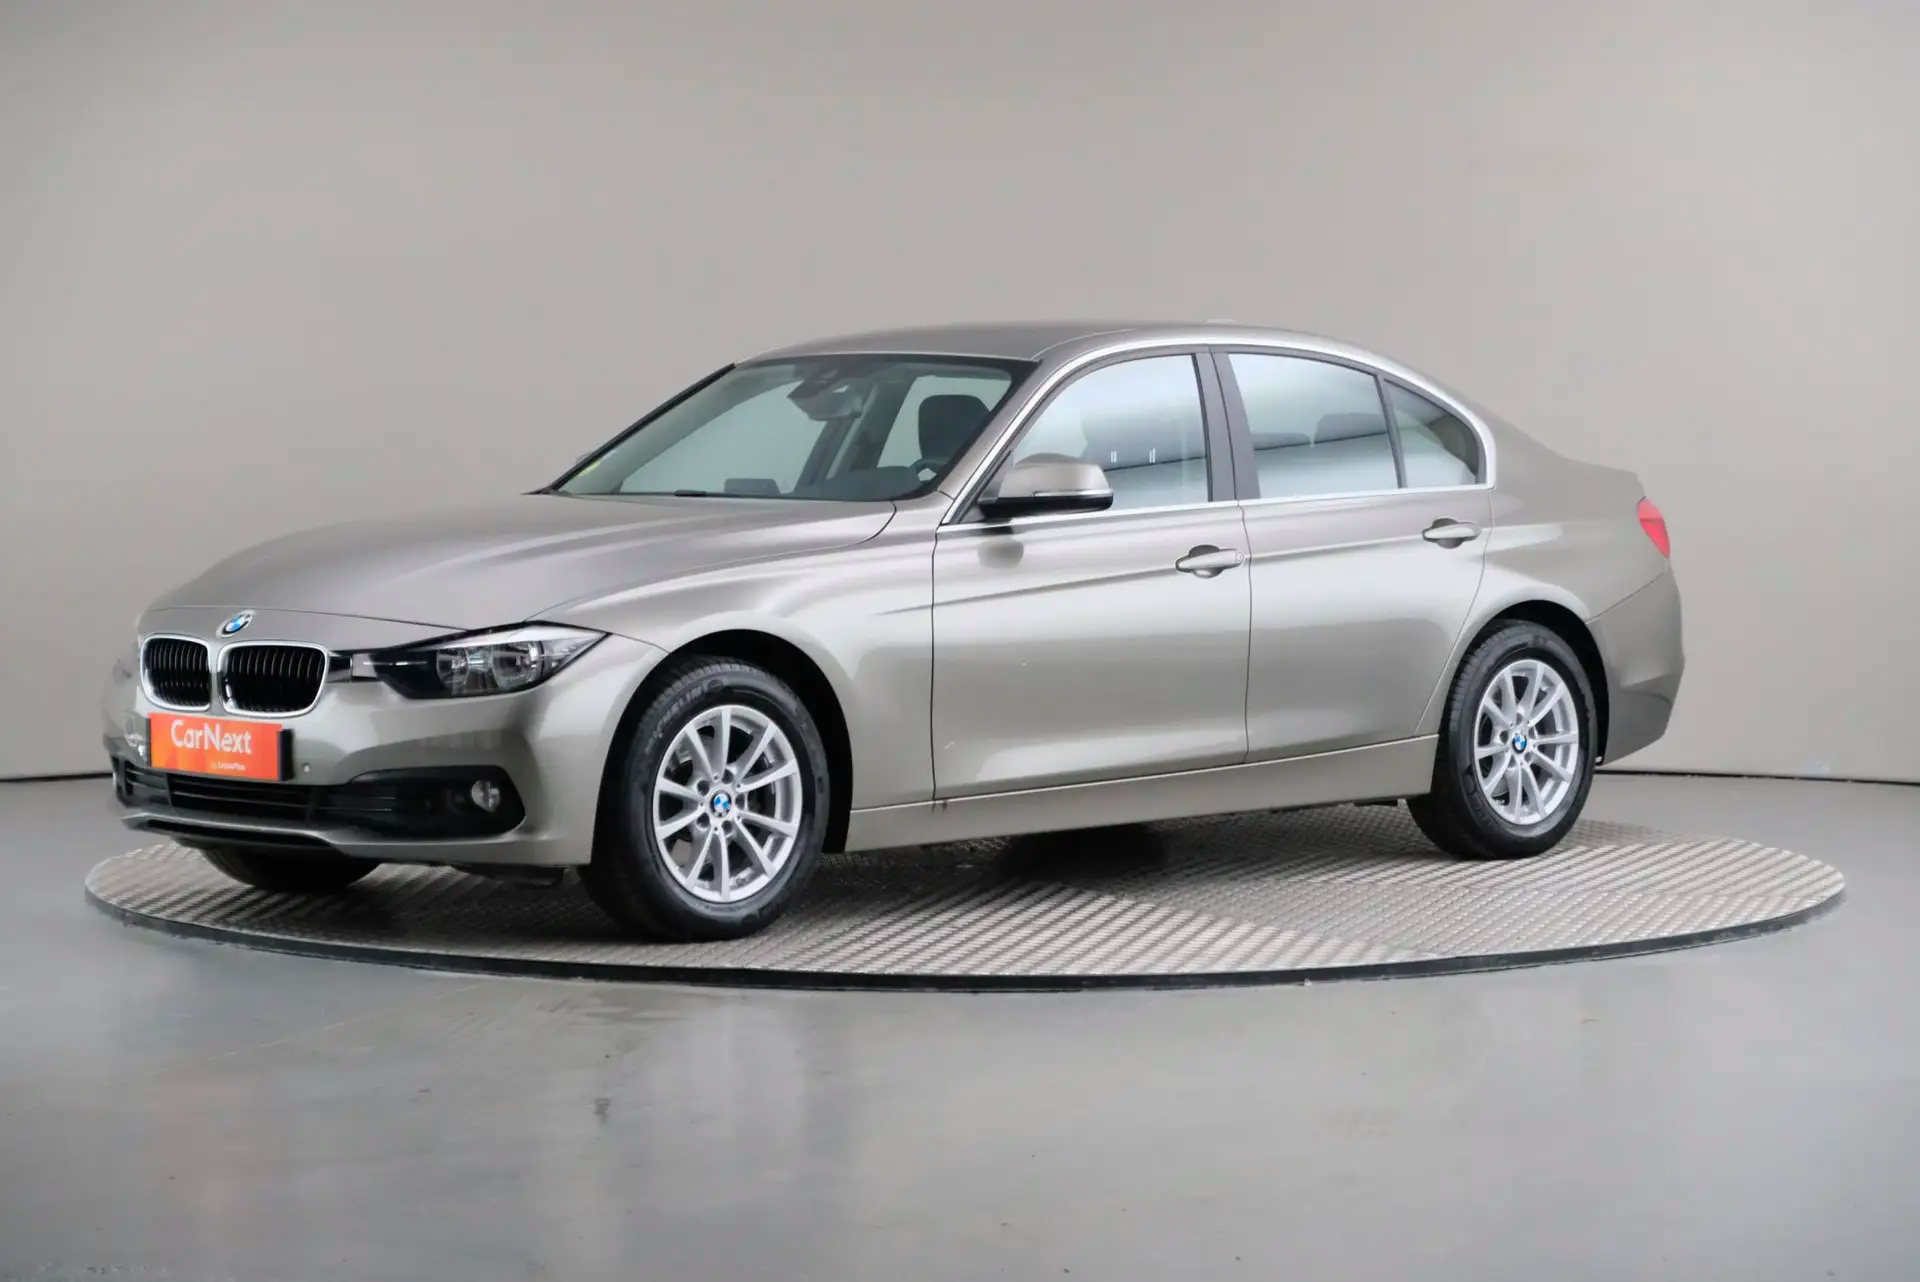 BMW-3-Series tweedehands bestellen online auto